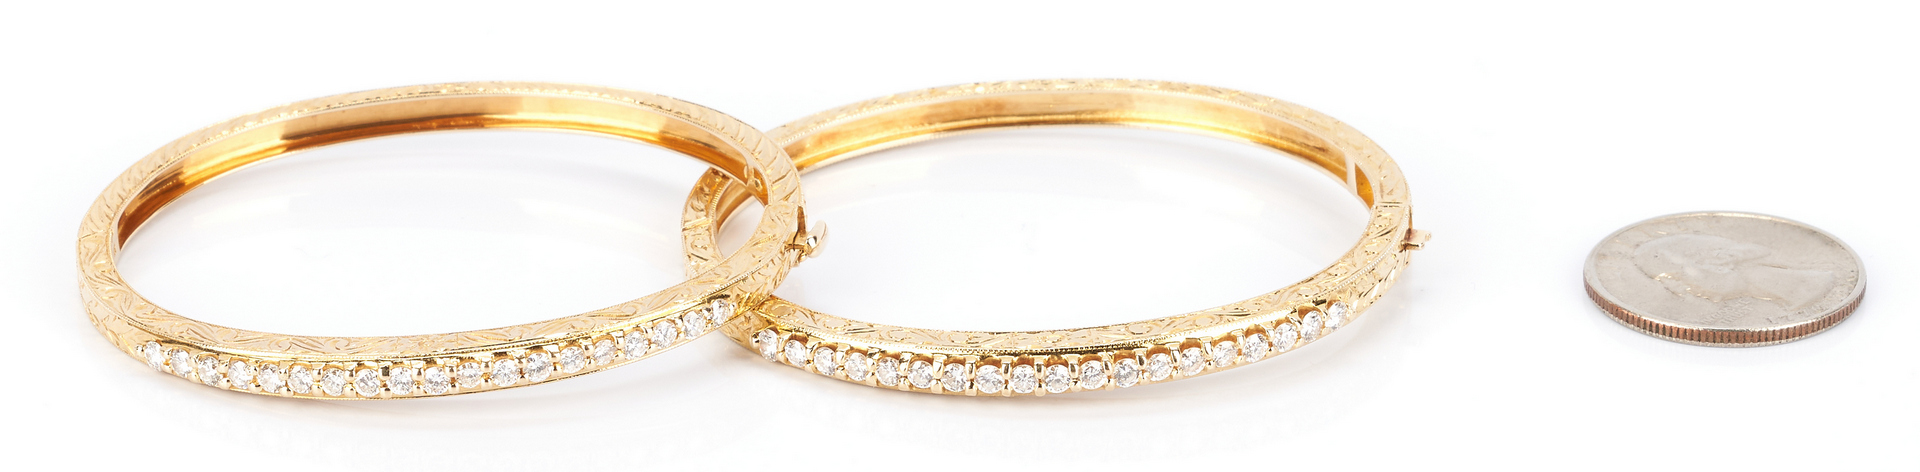 Lot 218: 2 14K Gold and Diamond Bracelets